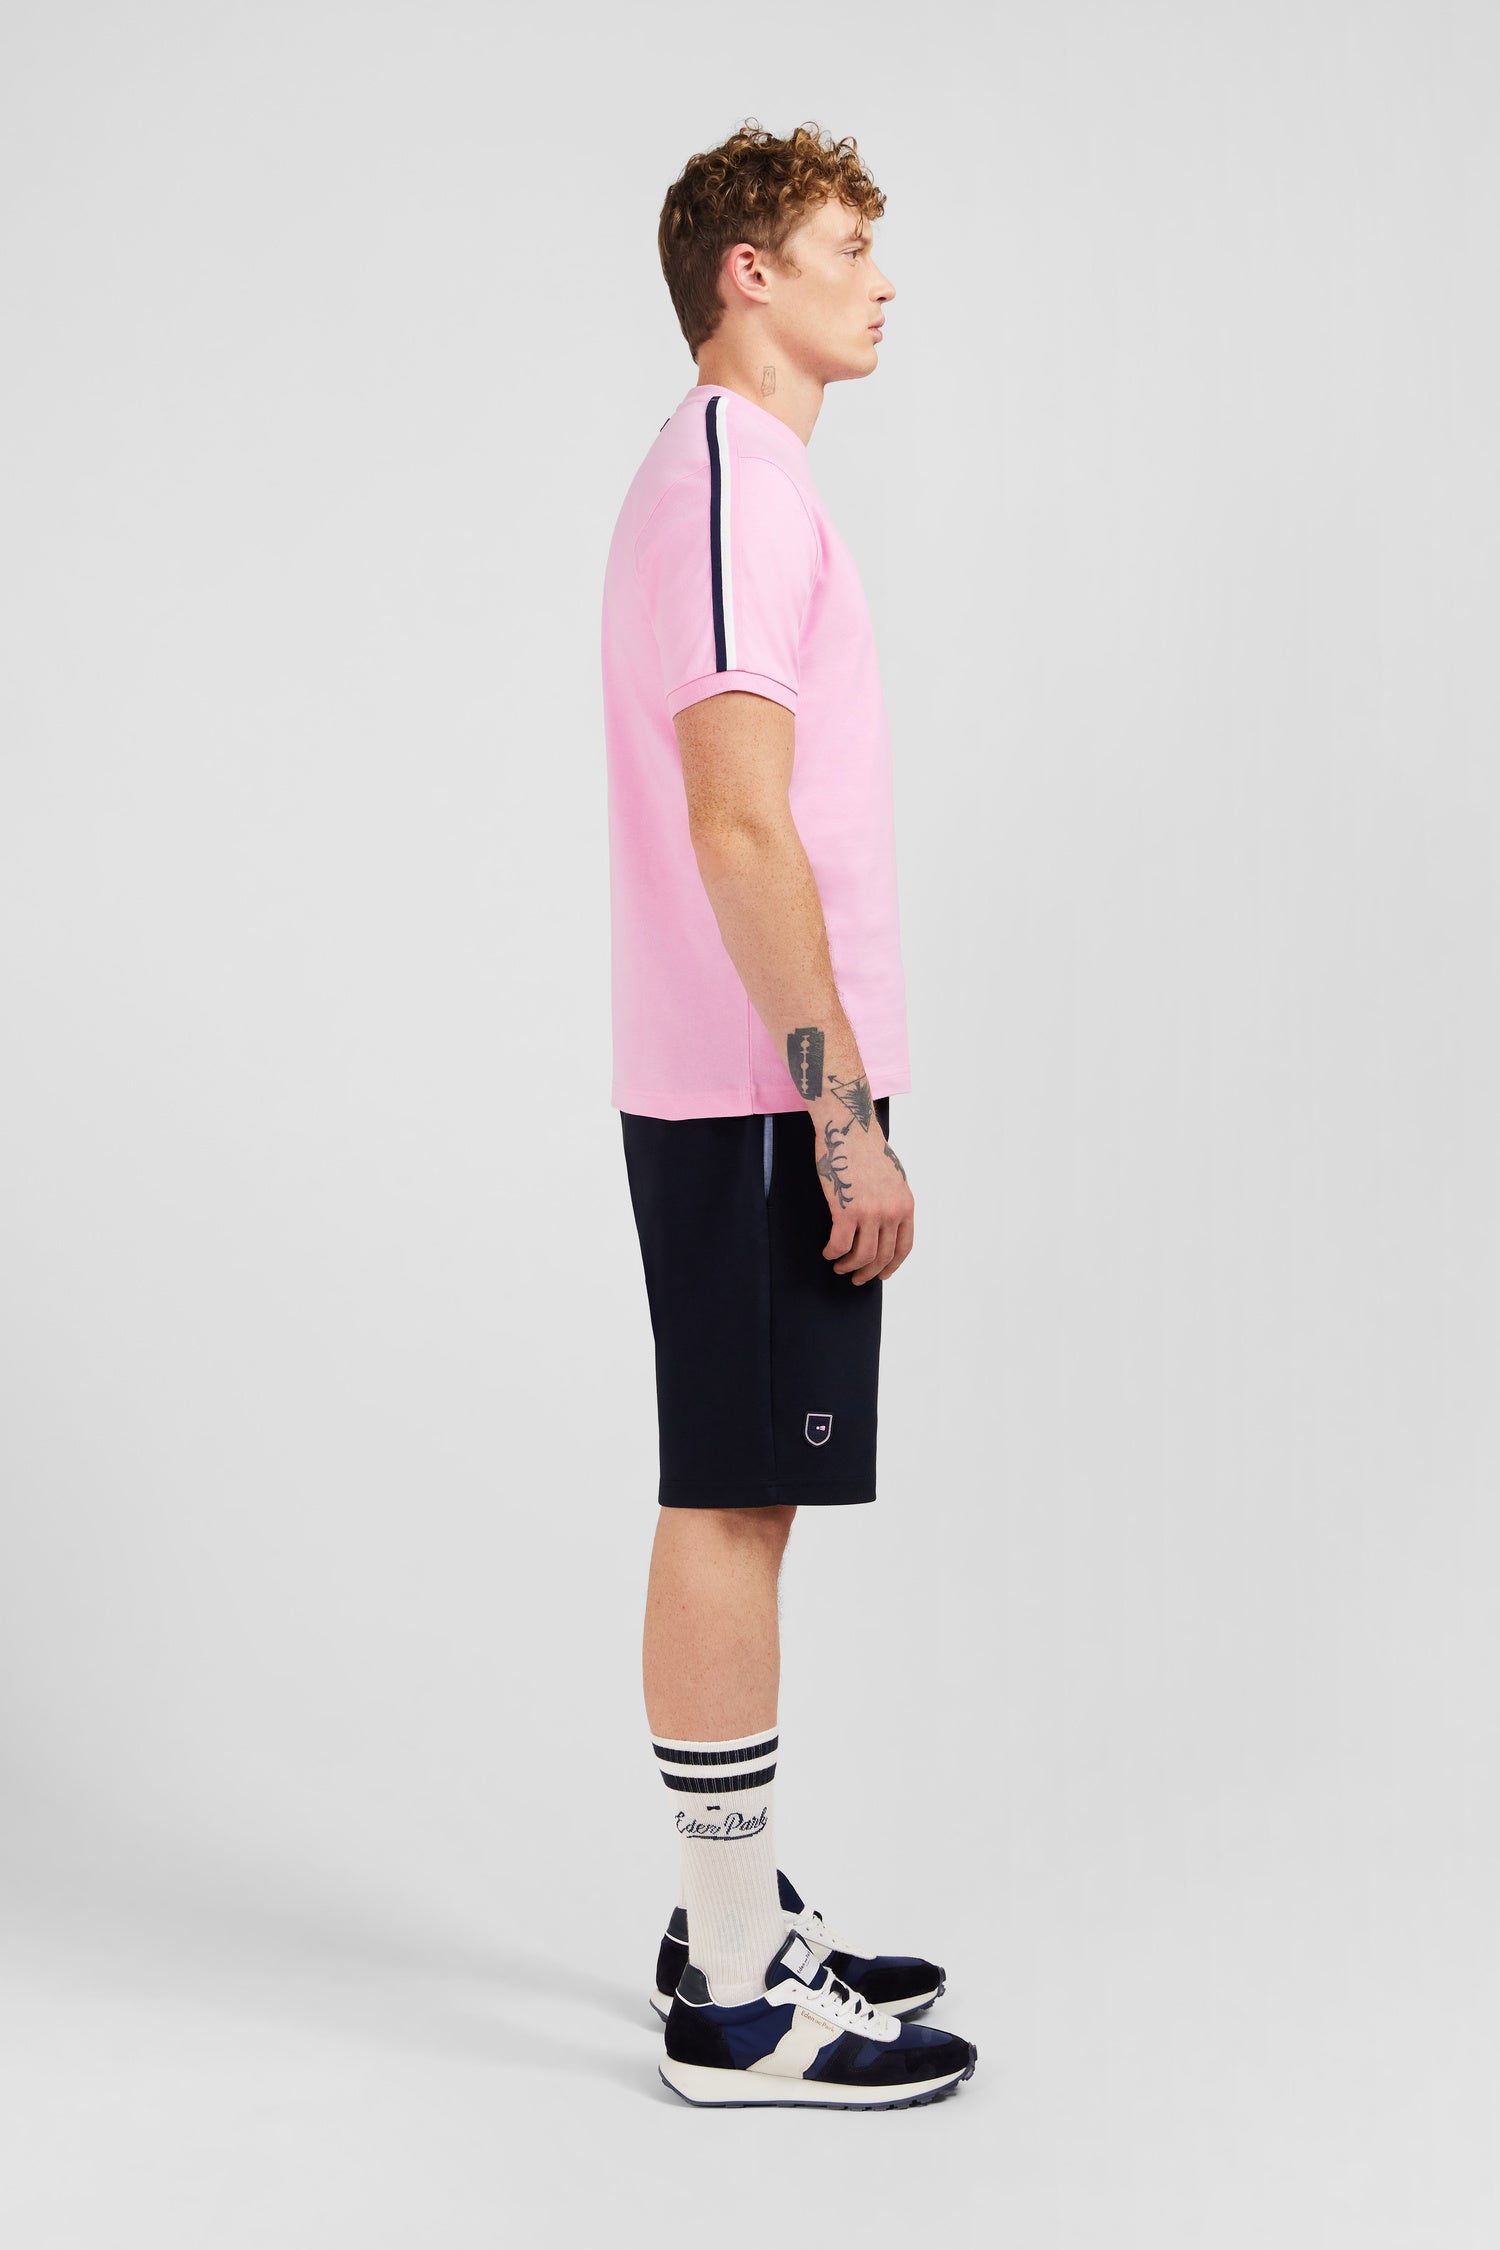 T-shirt manches courtes rose en coton galons épaules tricolores